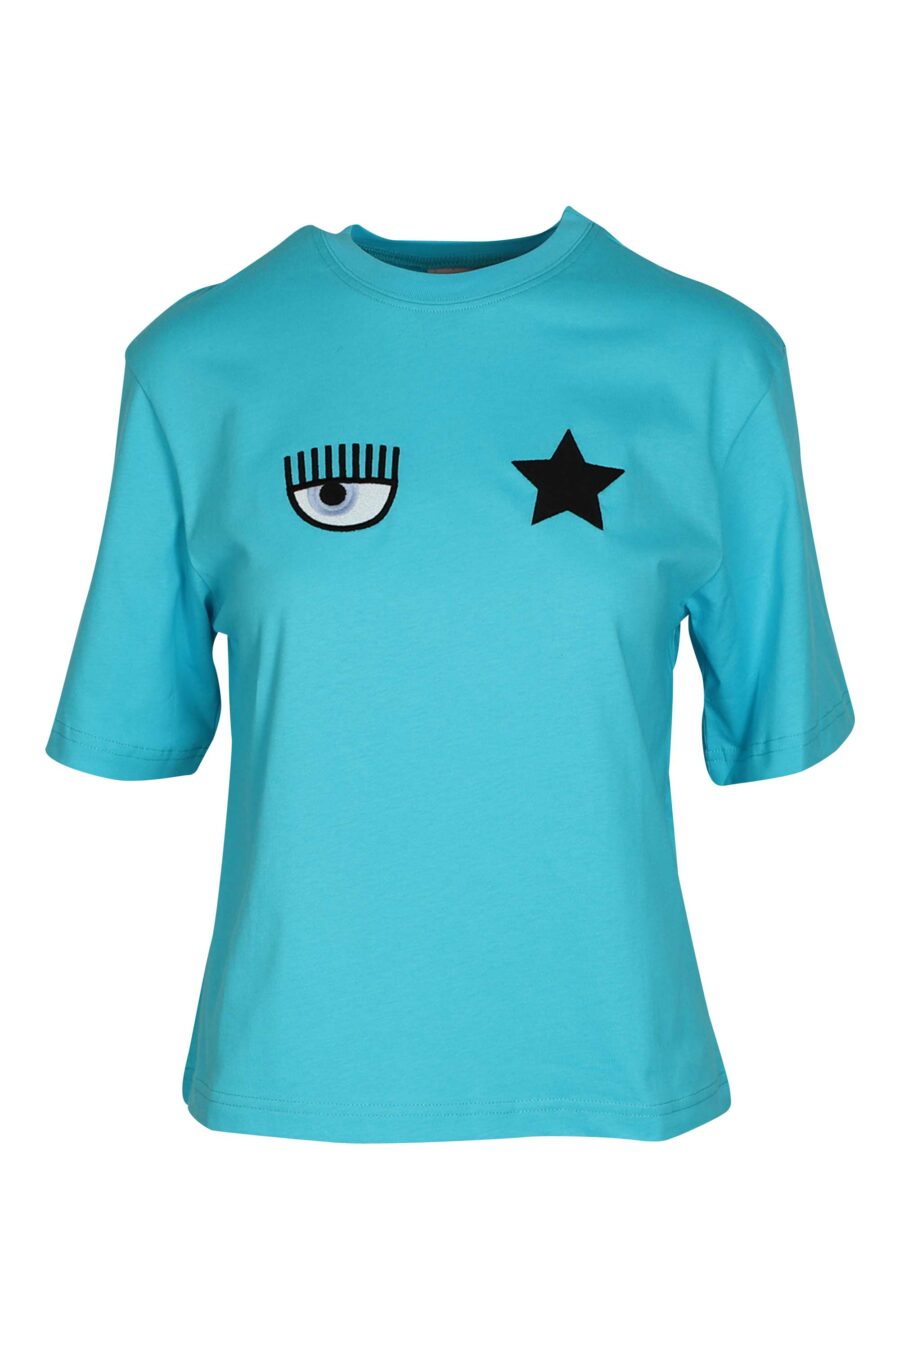 Camiseta azul cielo con logo ojo y estrella - 8052672269478